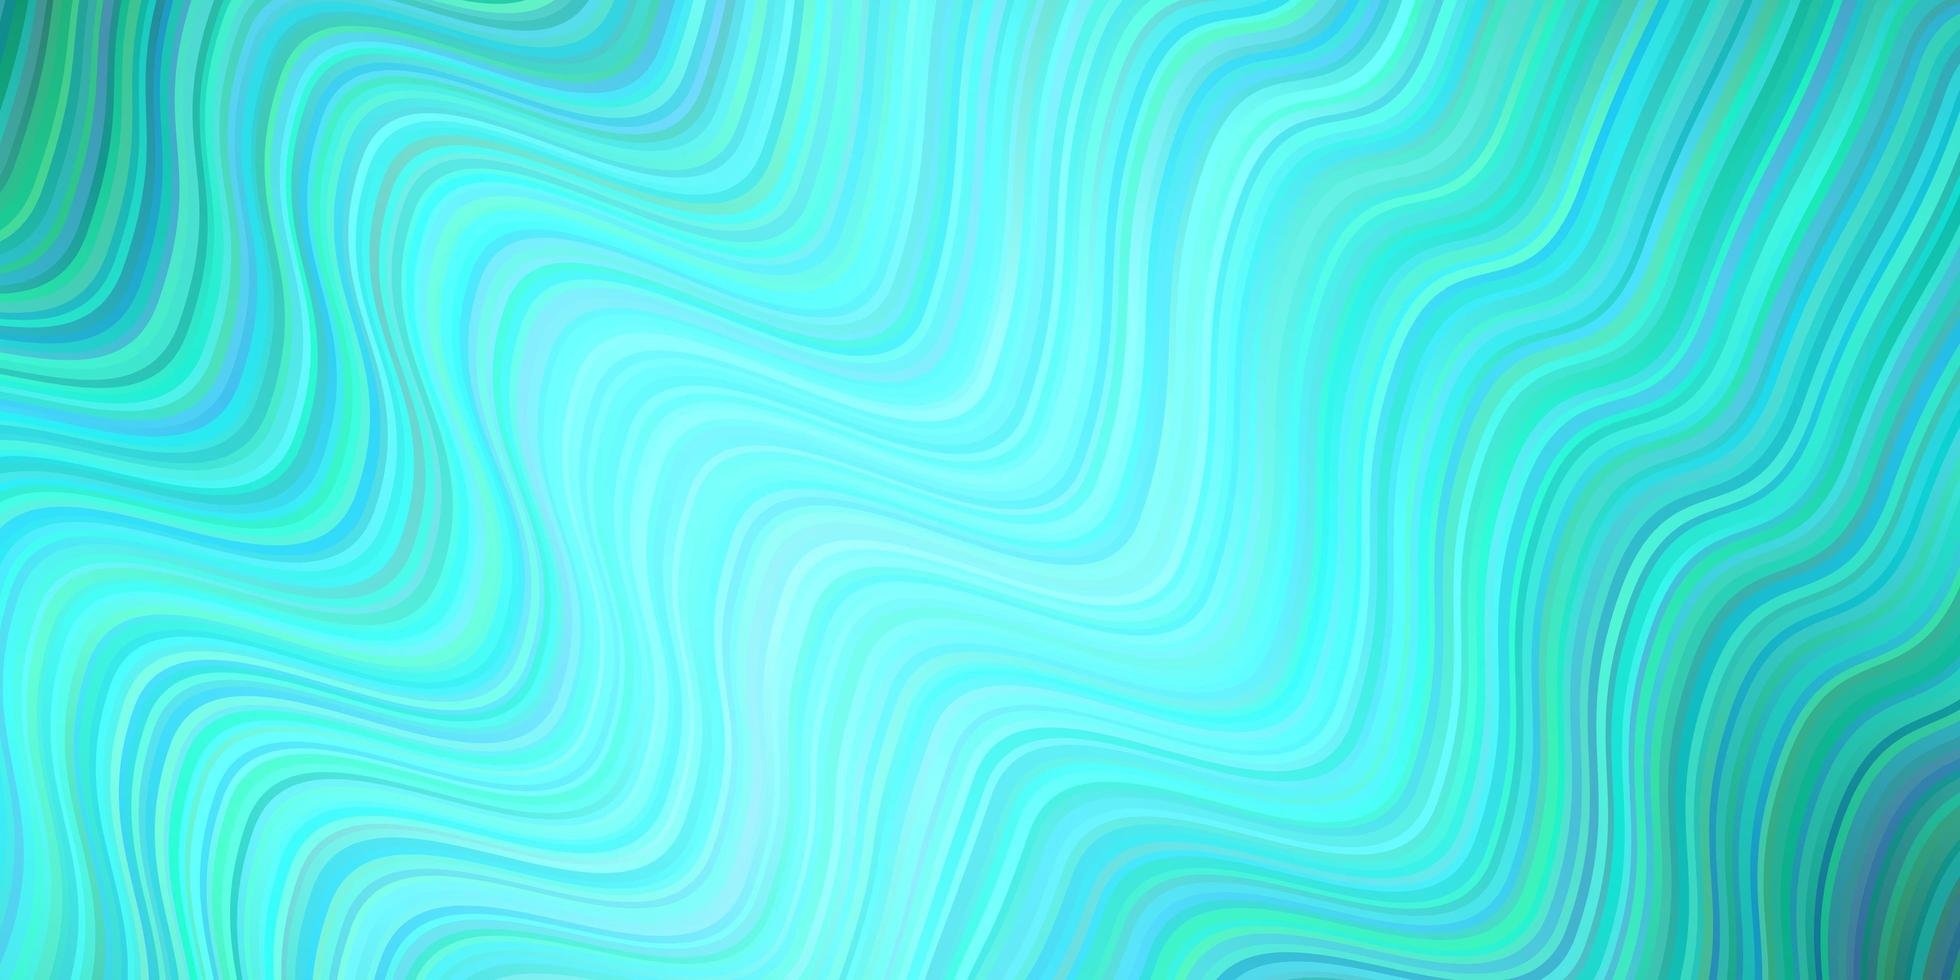 textura de vetor verde claro com linhas curvas.